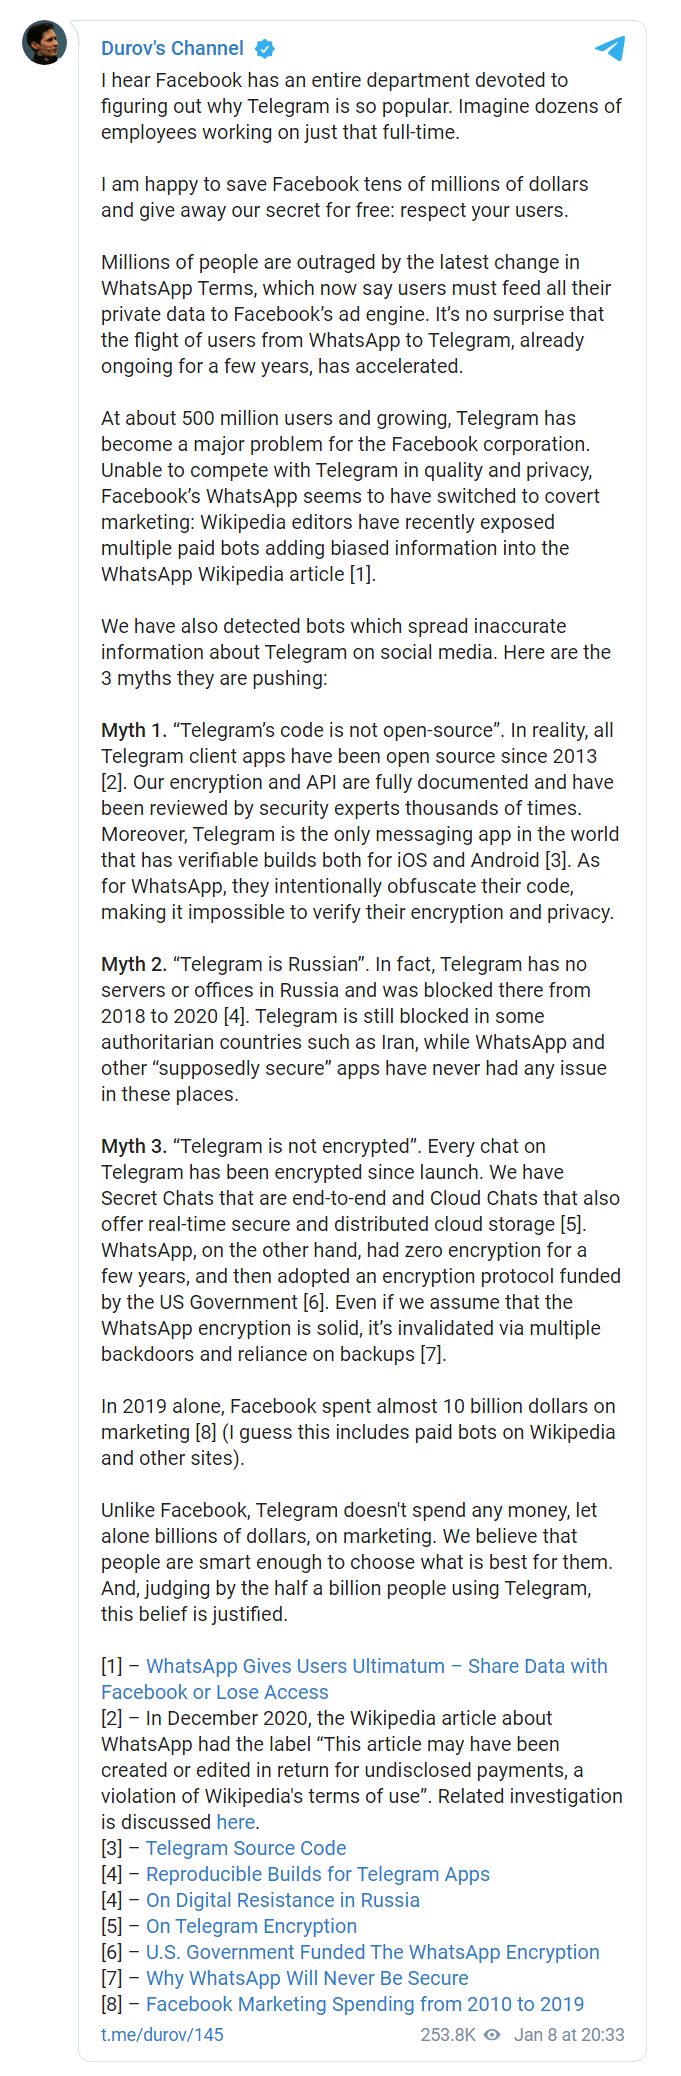 Дуров предсказал бегство пользователей WhatsApp в Telegram